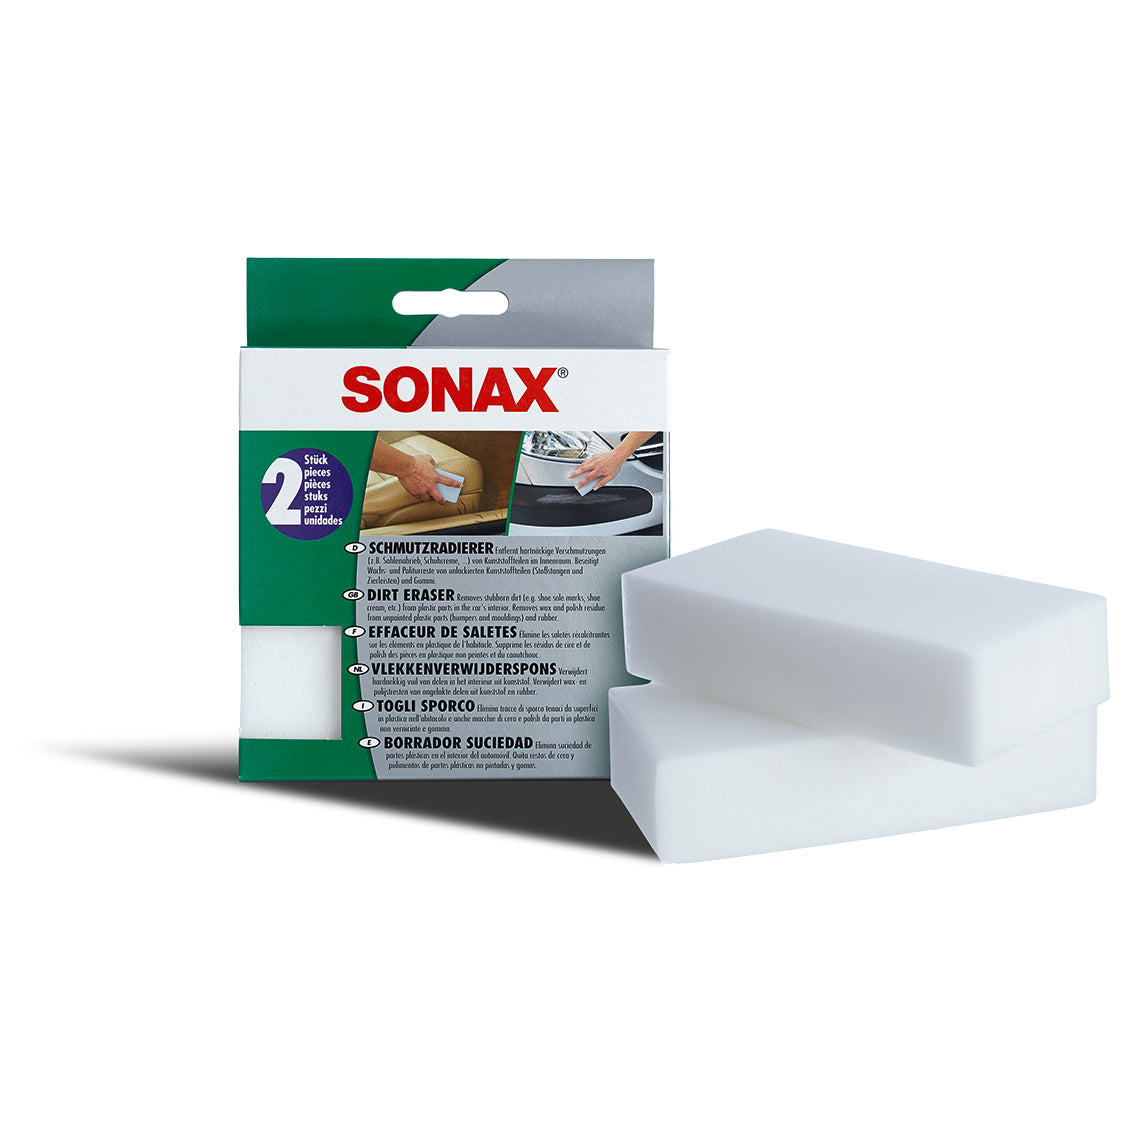 SONAX Dirt Eraser 2pc Pack